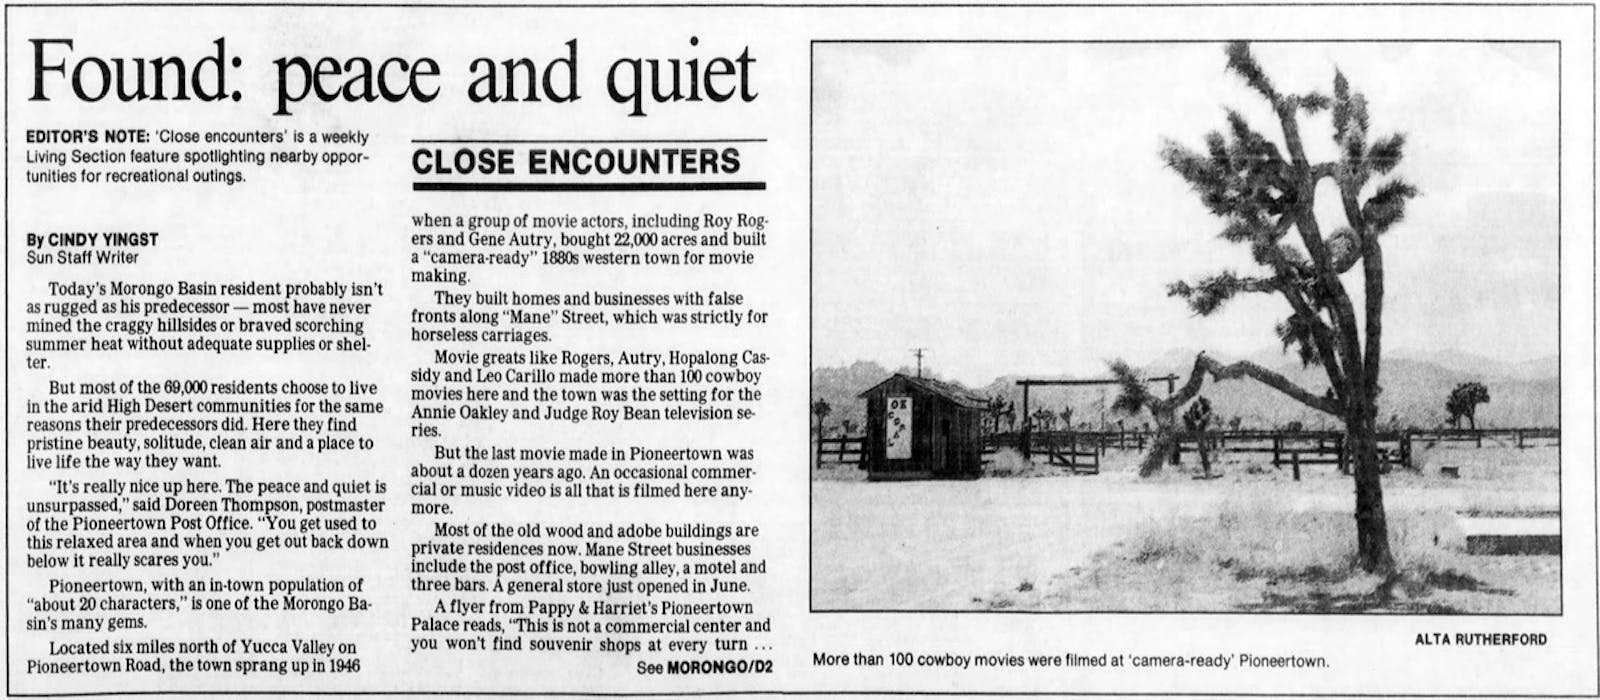 July 12, 1986 - The San Bernardino County Sun clipping